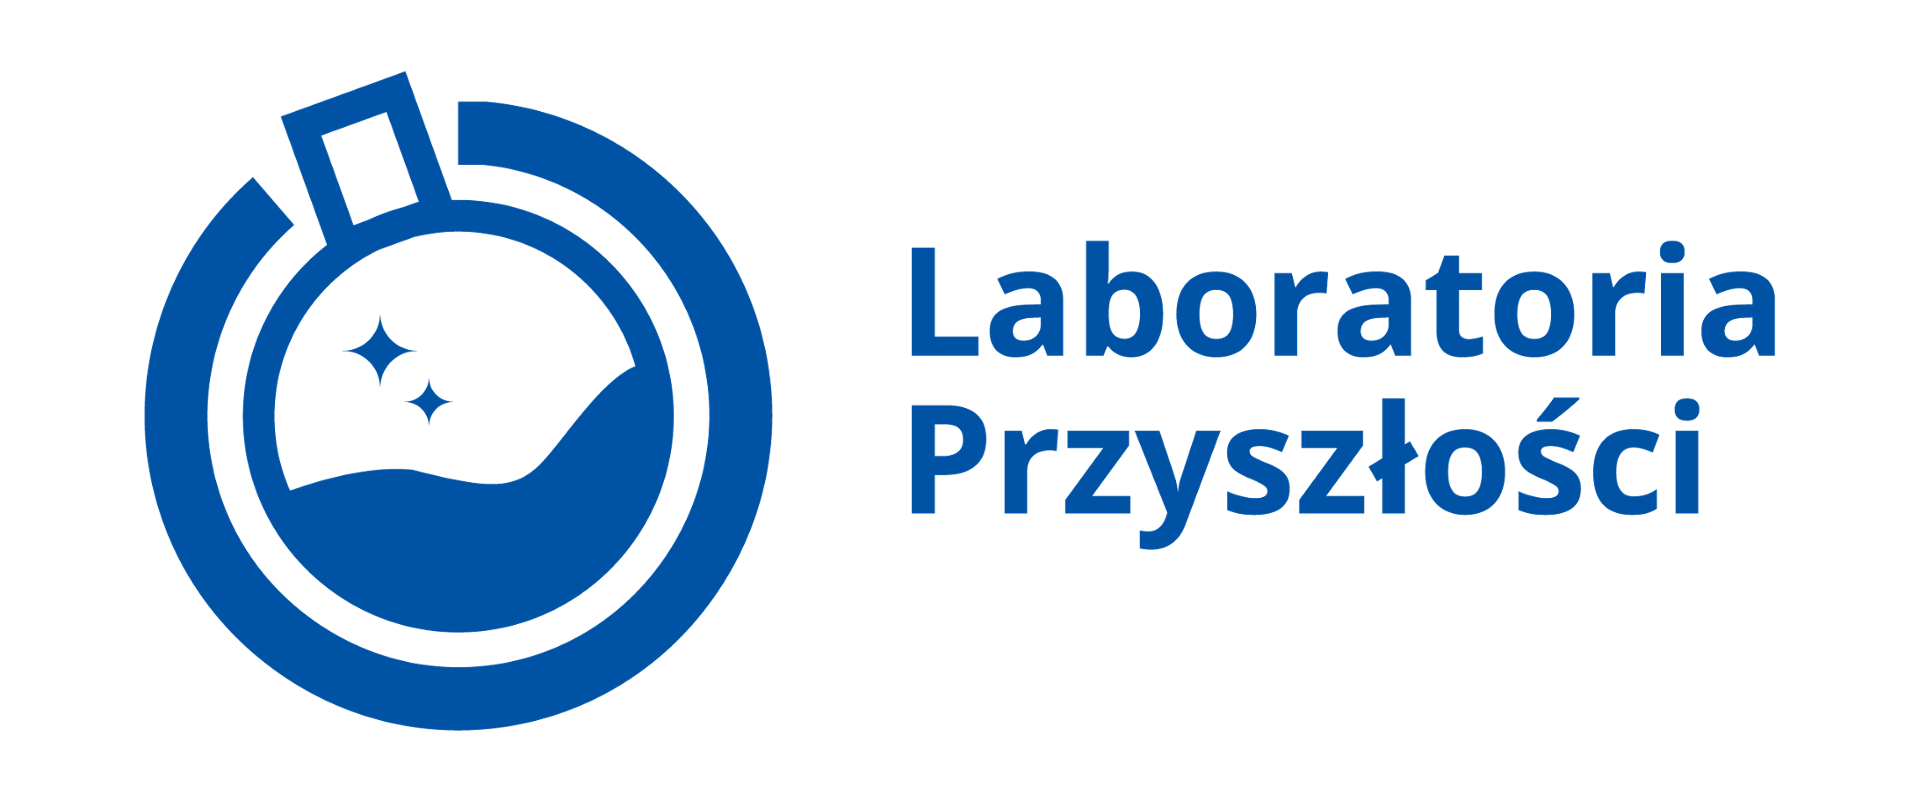 Laboratoria Przyszłości - Lubuski Urząd Wojewódzki - Portal Gov.pl